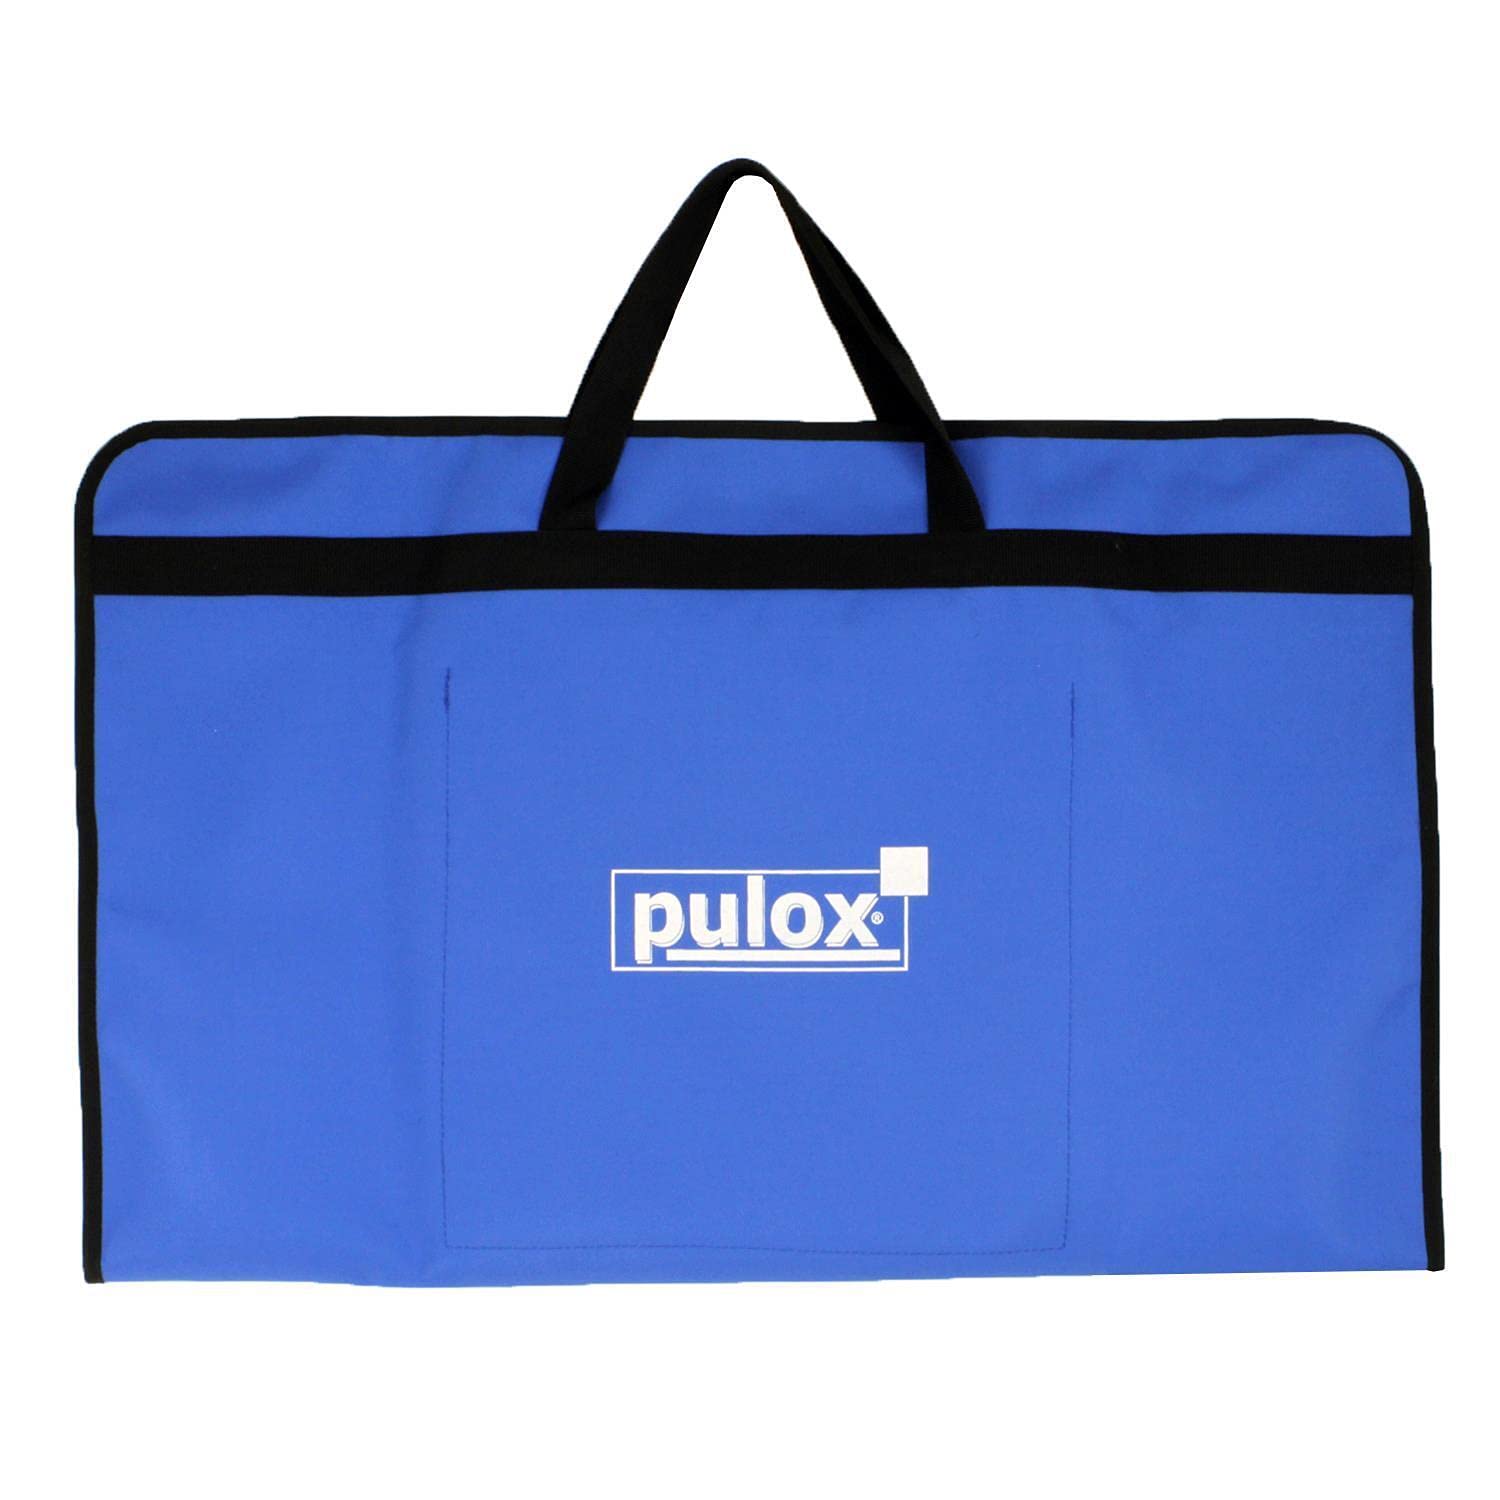 PULOX Erste Hilfe Trainingspuppe Practi-Man Reanimationspuppe Transporttasche Tragetasche